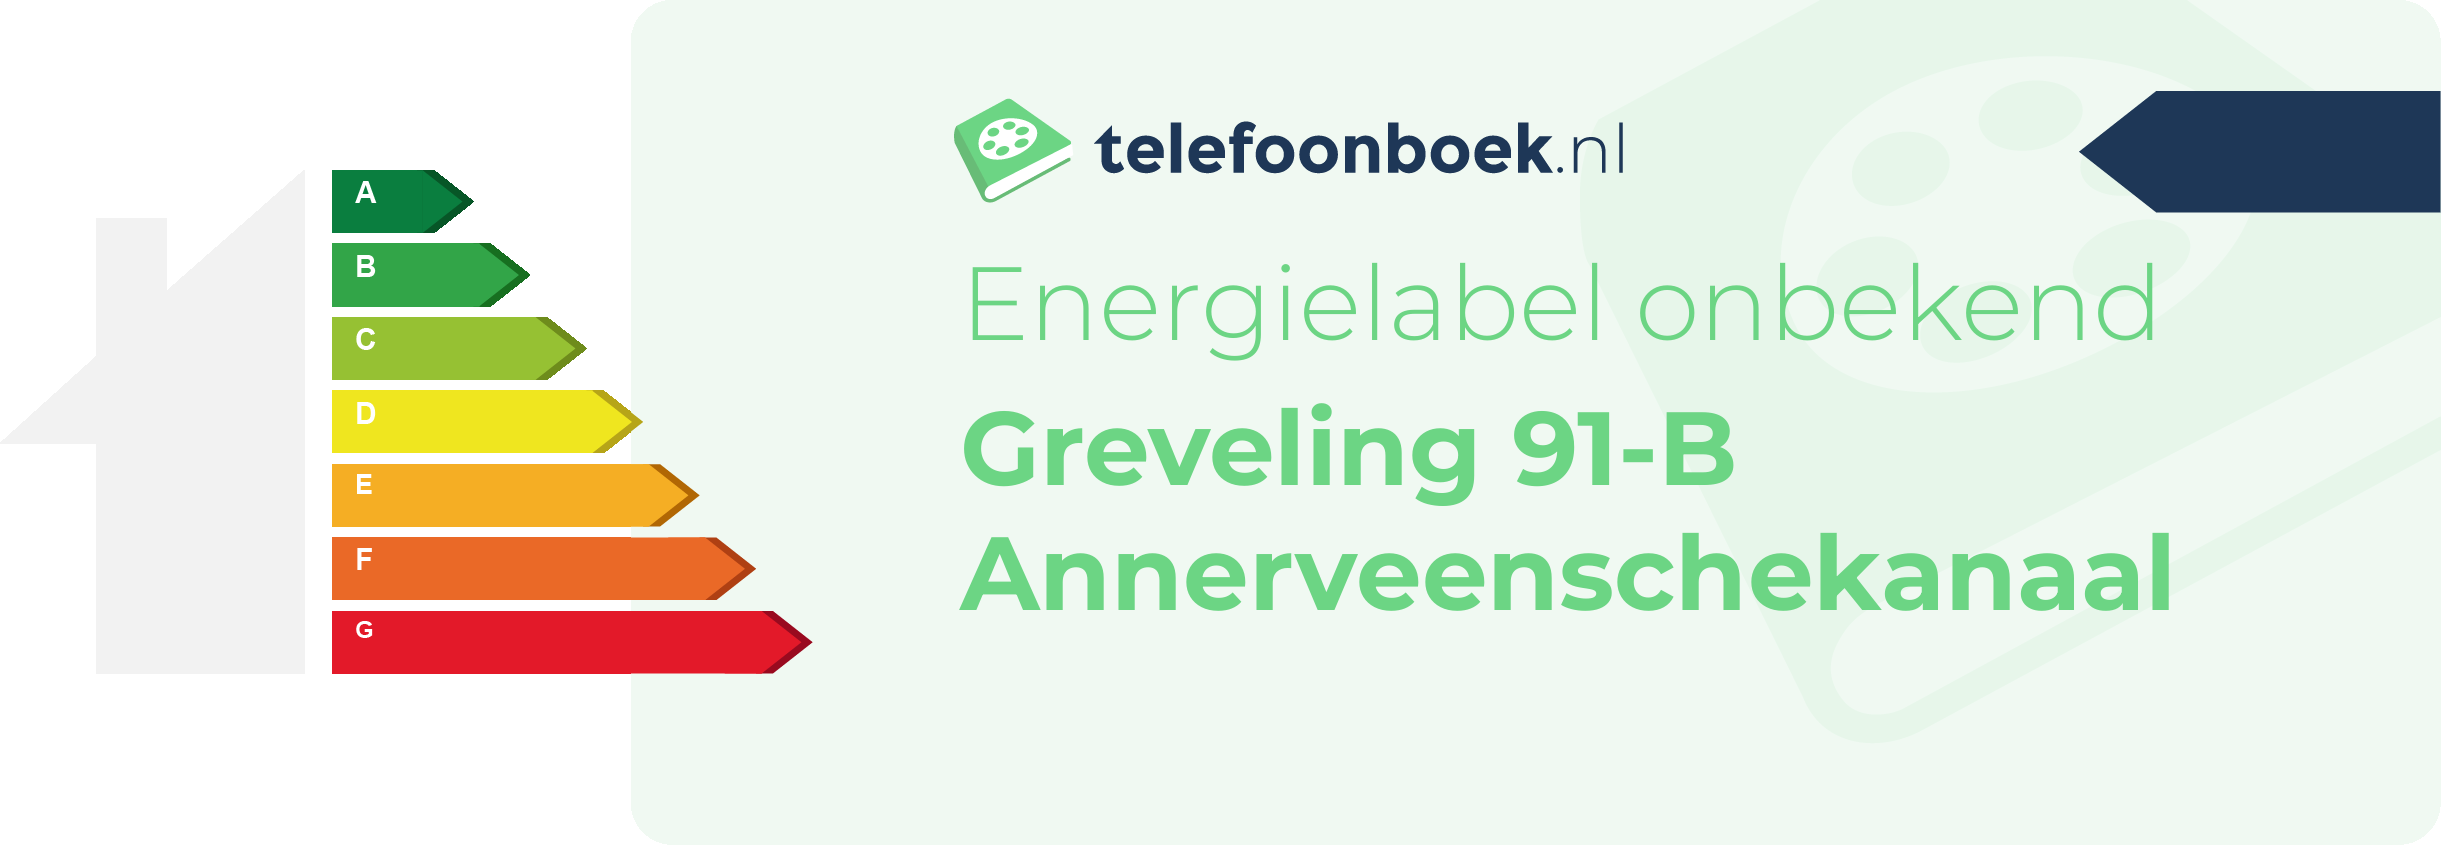 Energielabel Greveling 91-B Annerveenschekanaal